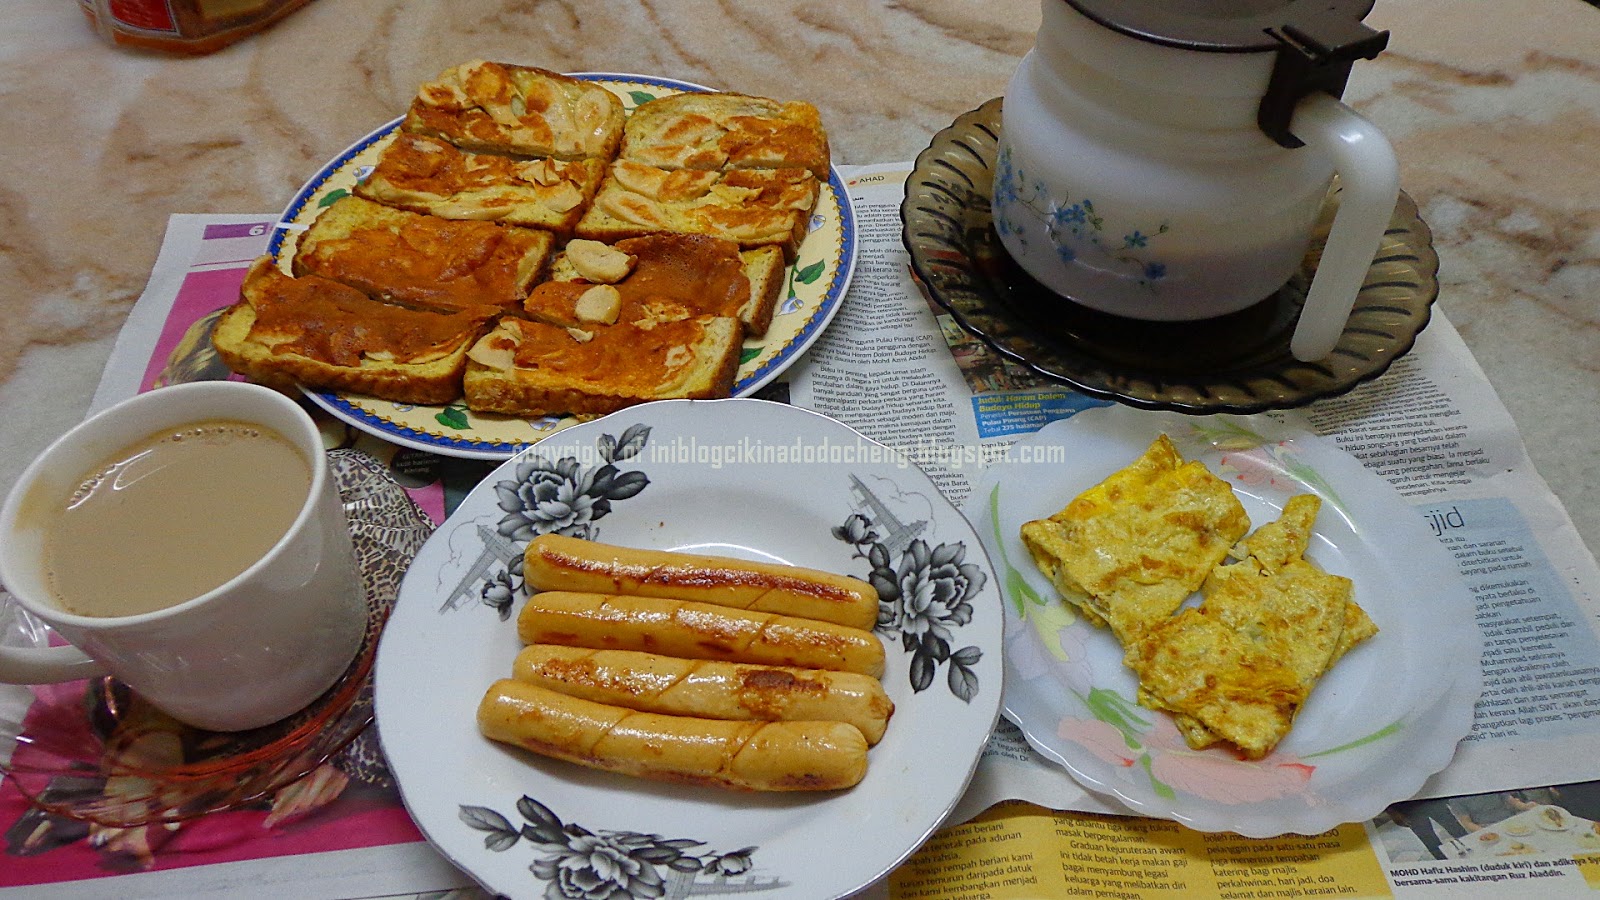 Blog cik ina do do cheng: Top 5 easy breakfast recipes 